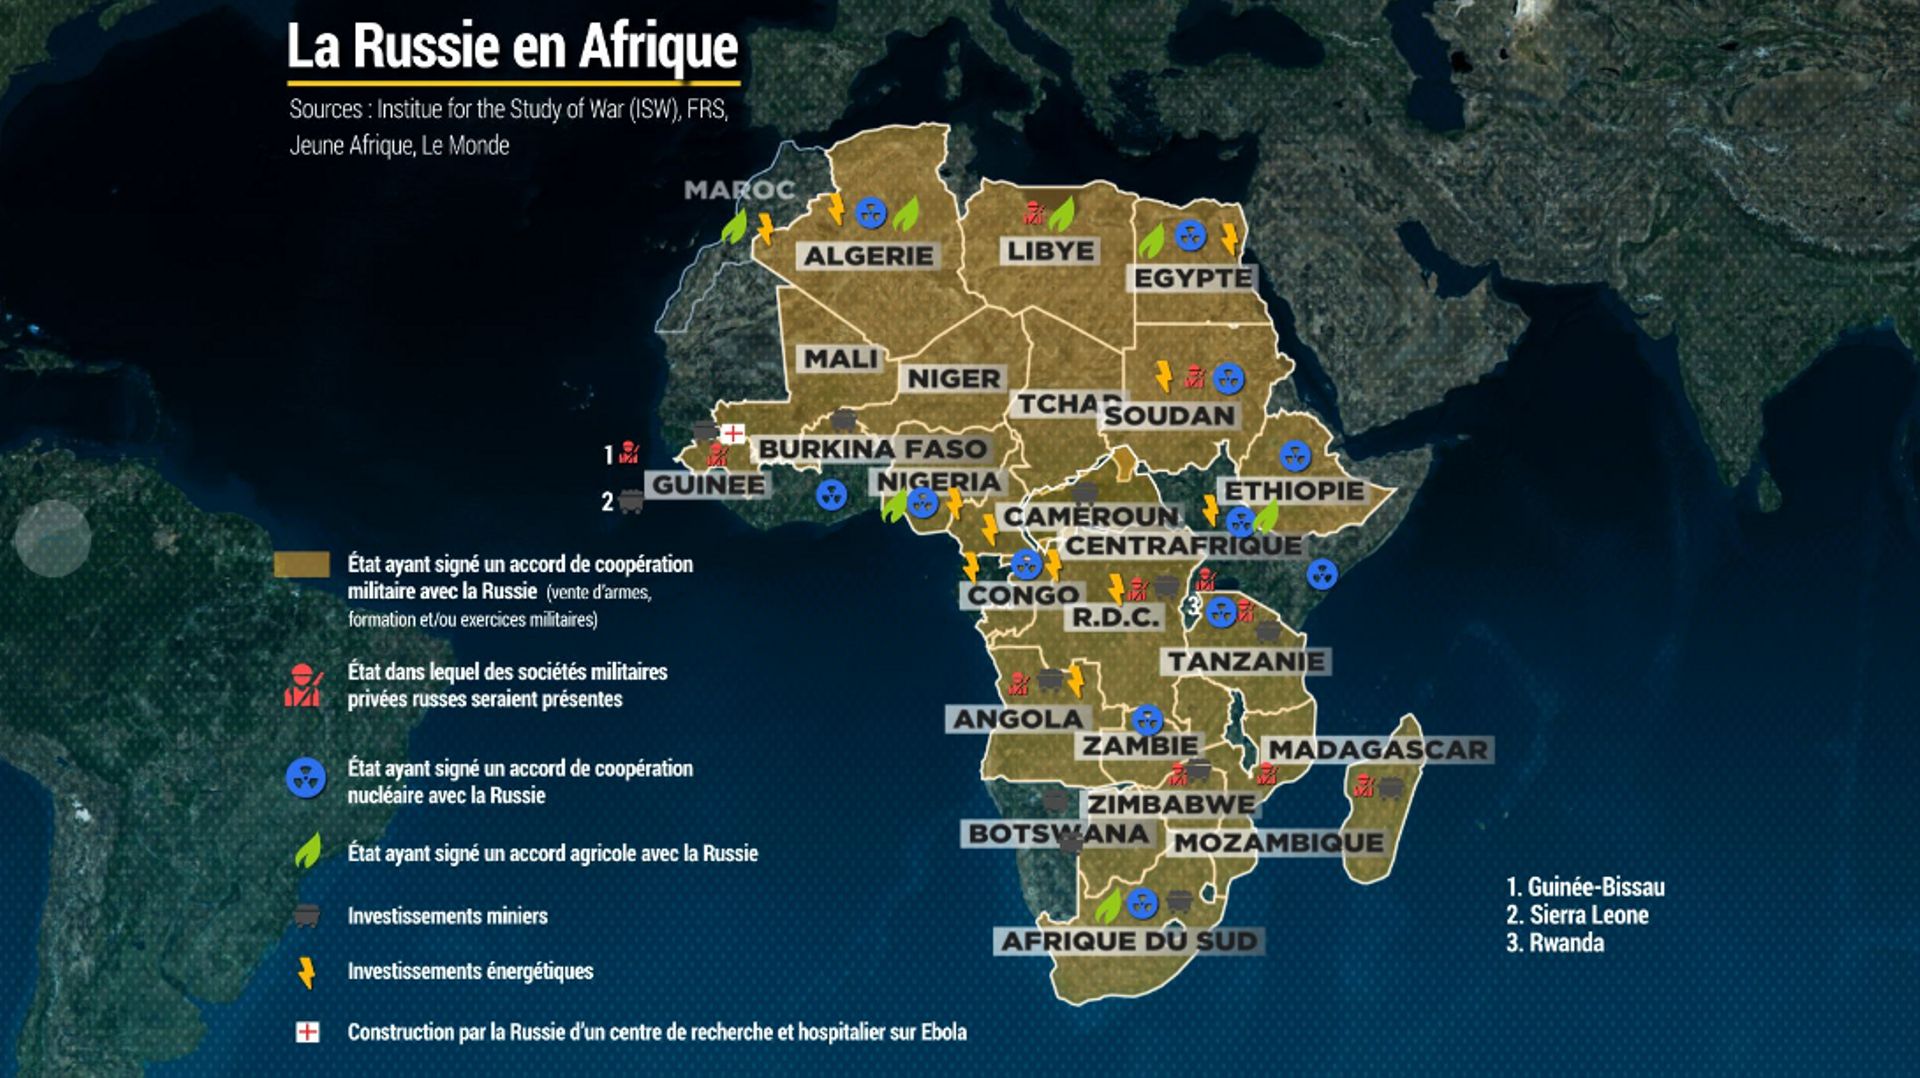 Présence Russe en Afrique, dans les domaines militaires, agricole, nucléaire, énergétique